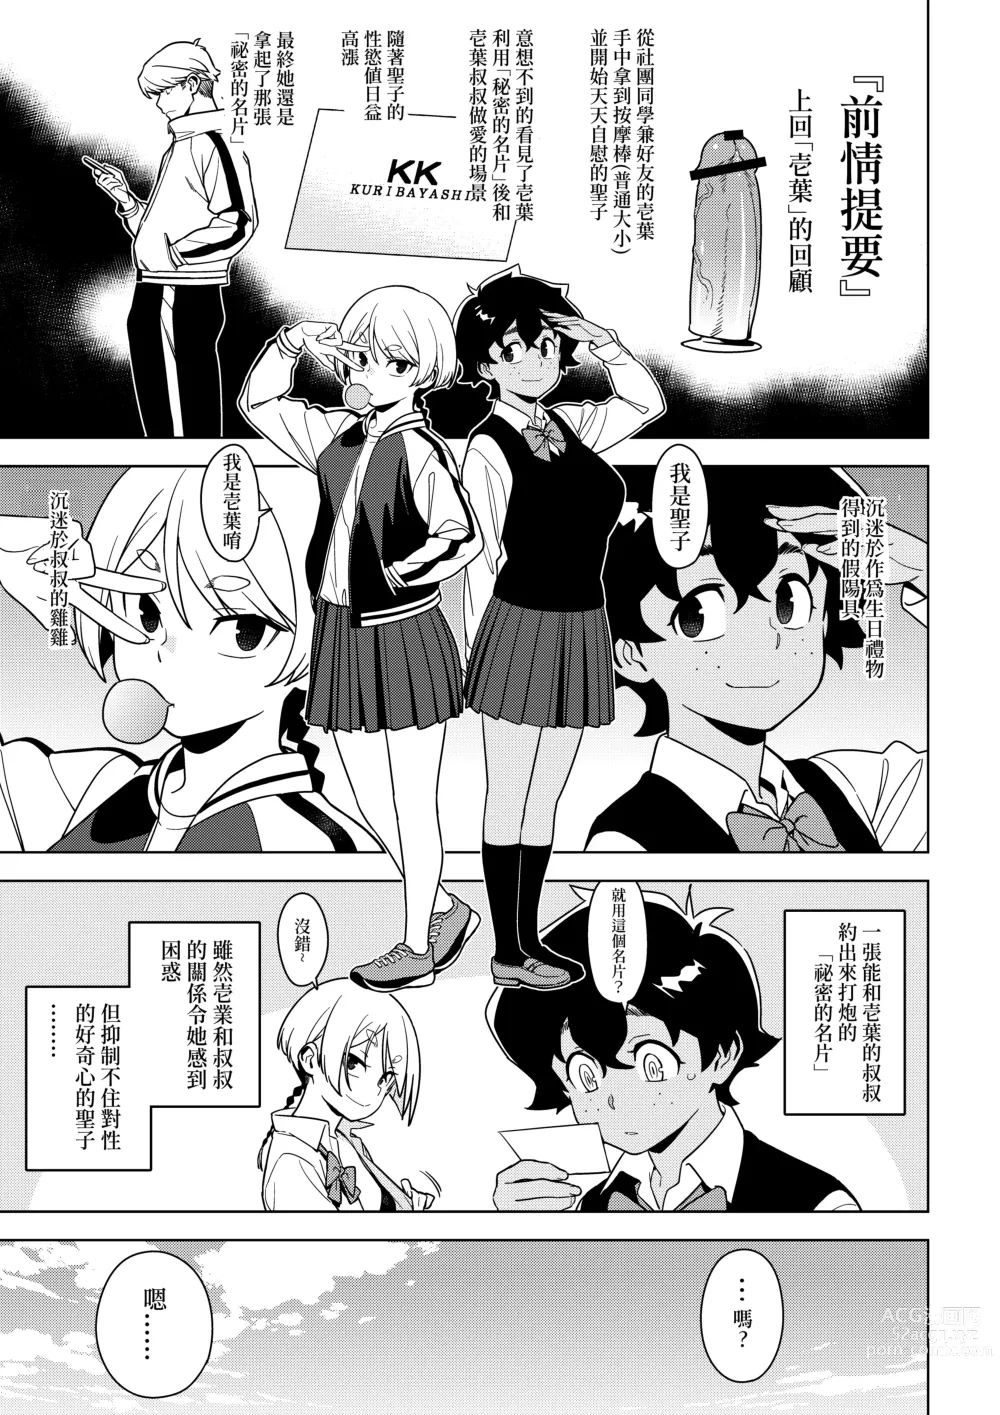 Page 2 of doujinshi Seiko